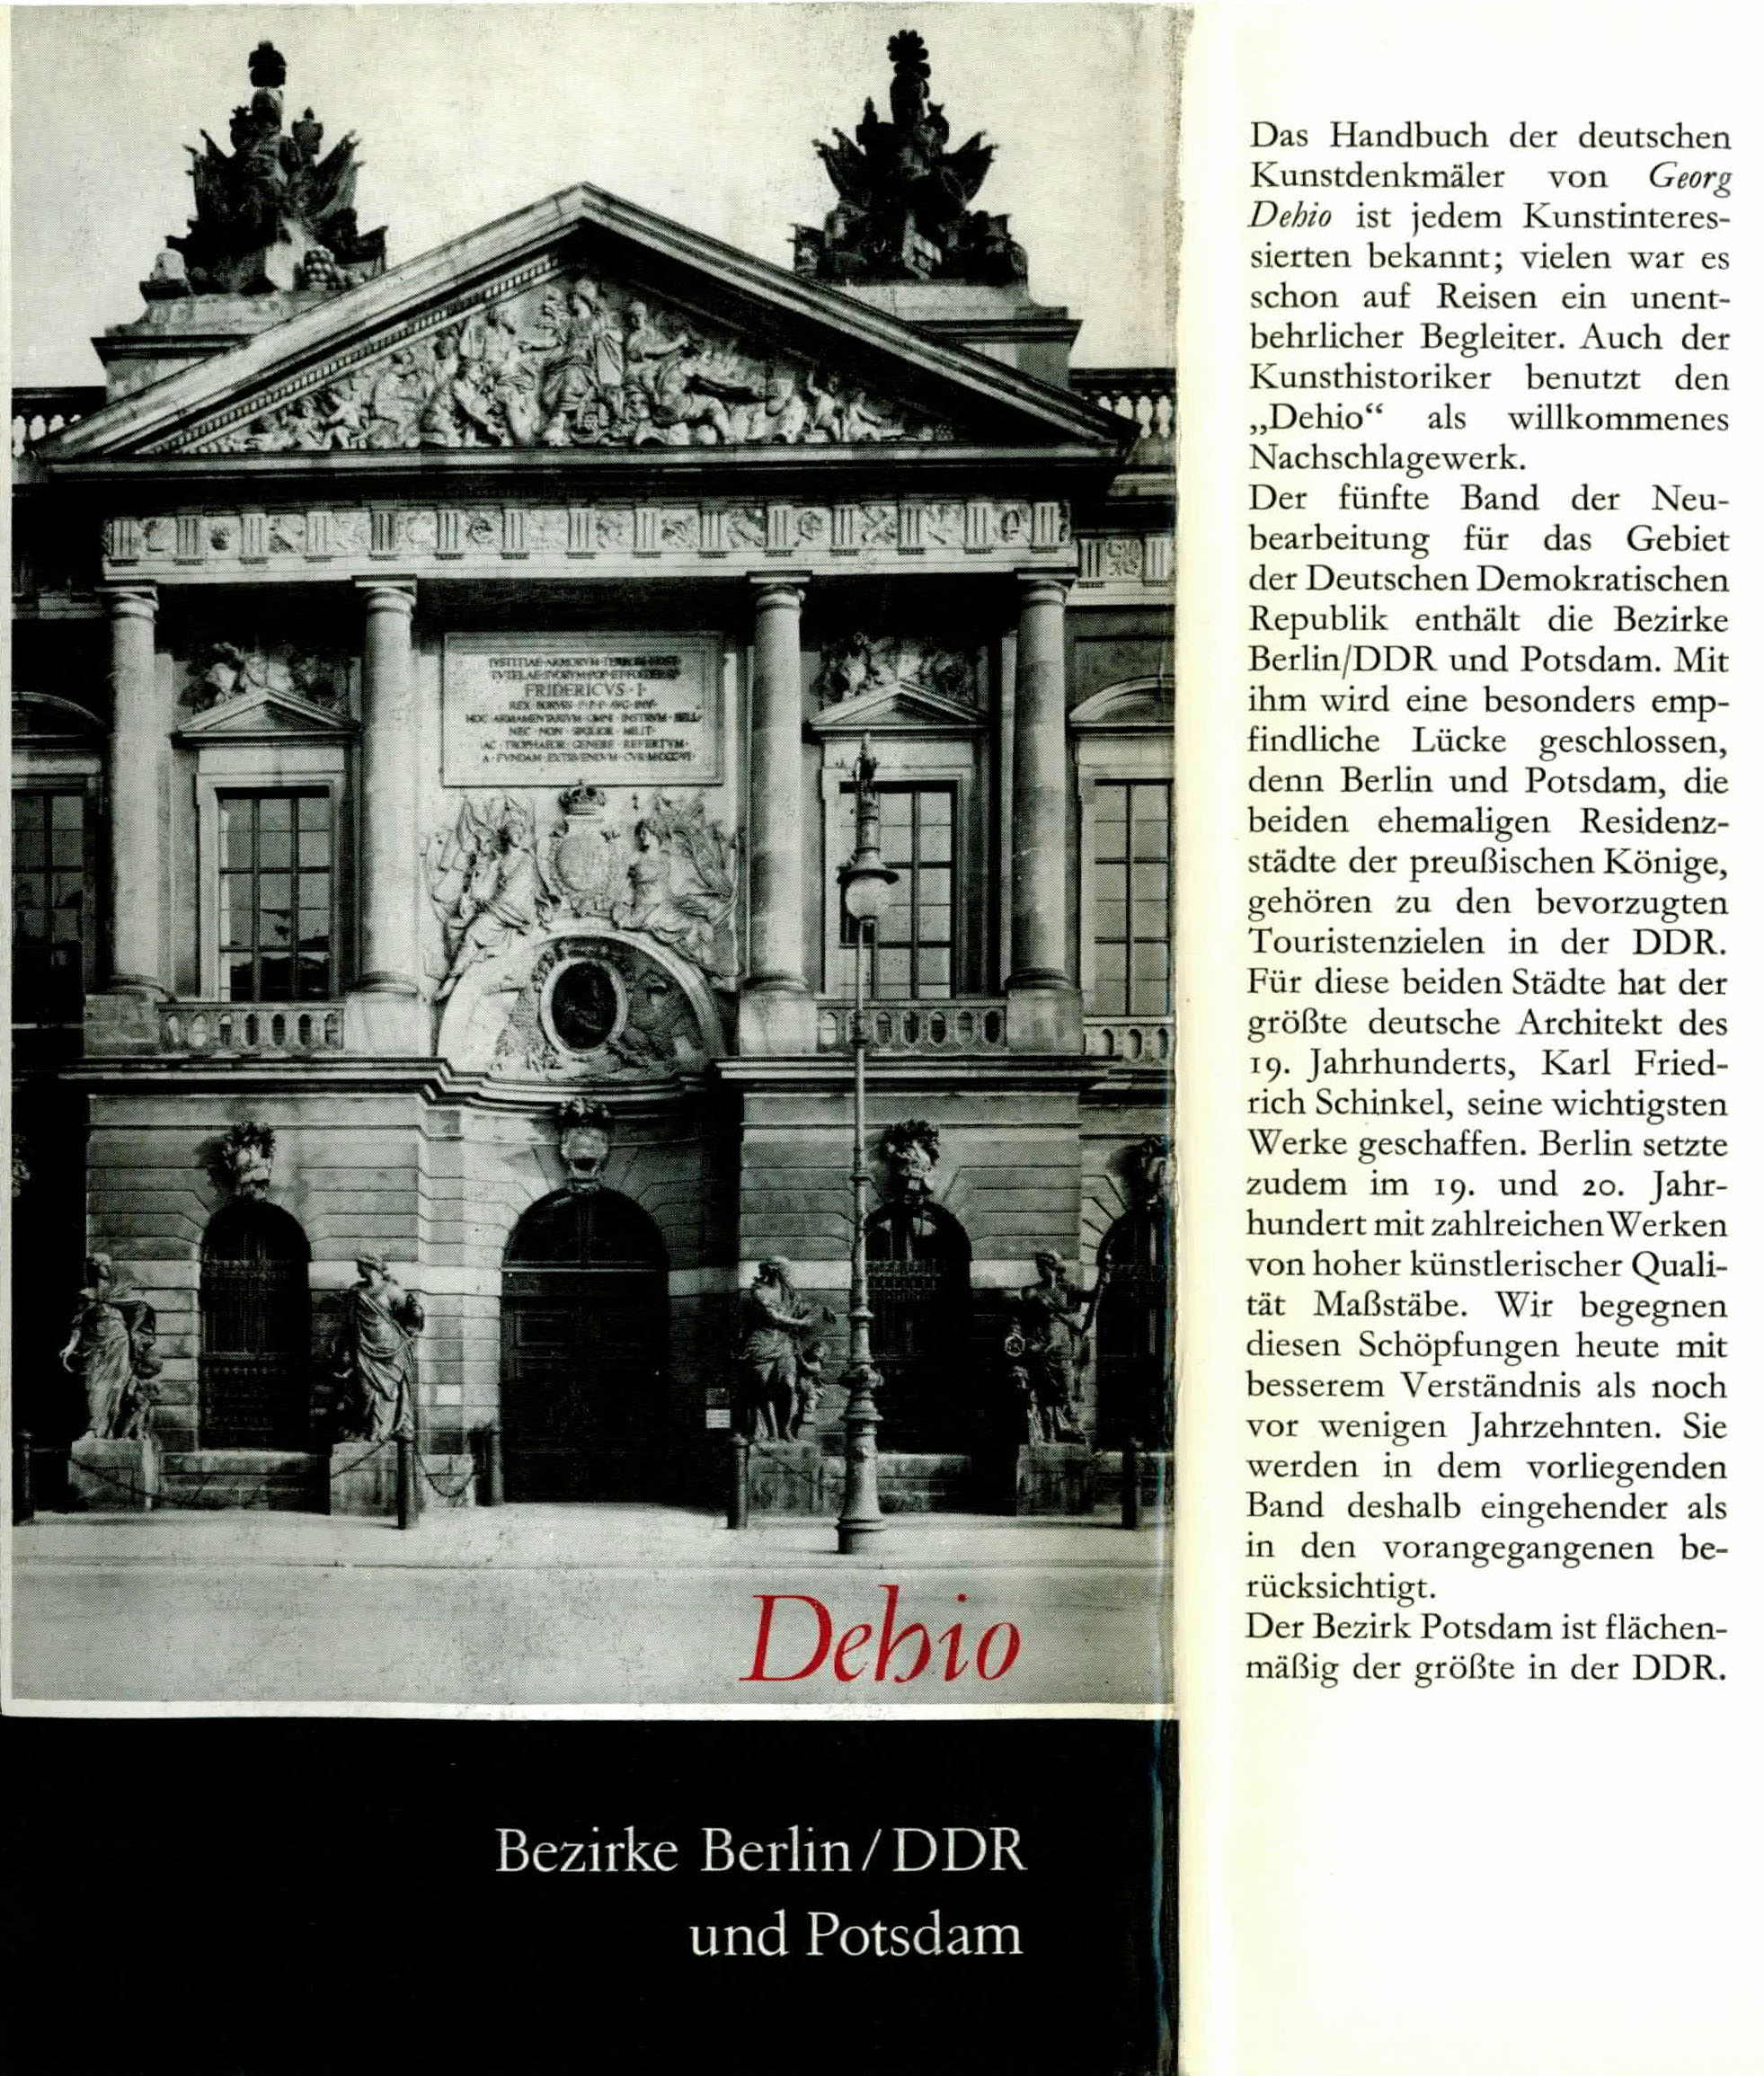 Handbuch der deutschen Kunstdenkmäler (Die Bezirke Berlin / DDR und Potsdam) - Büttner, Horst / Schröder, Ilse / Stepansky, Christa